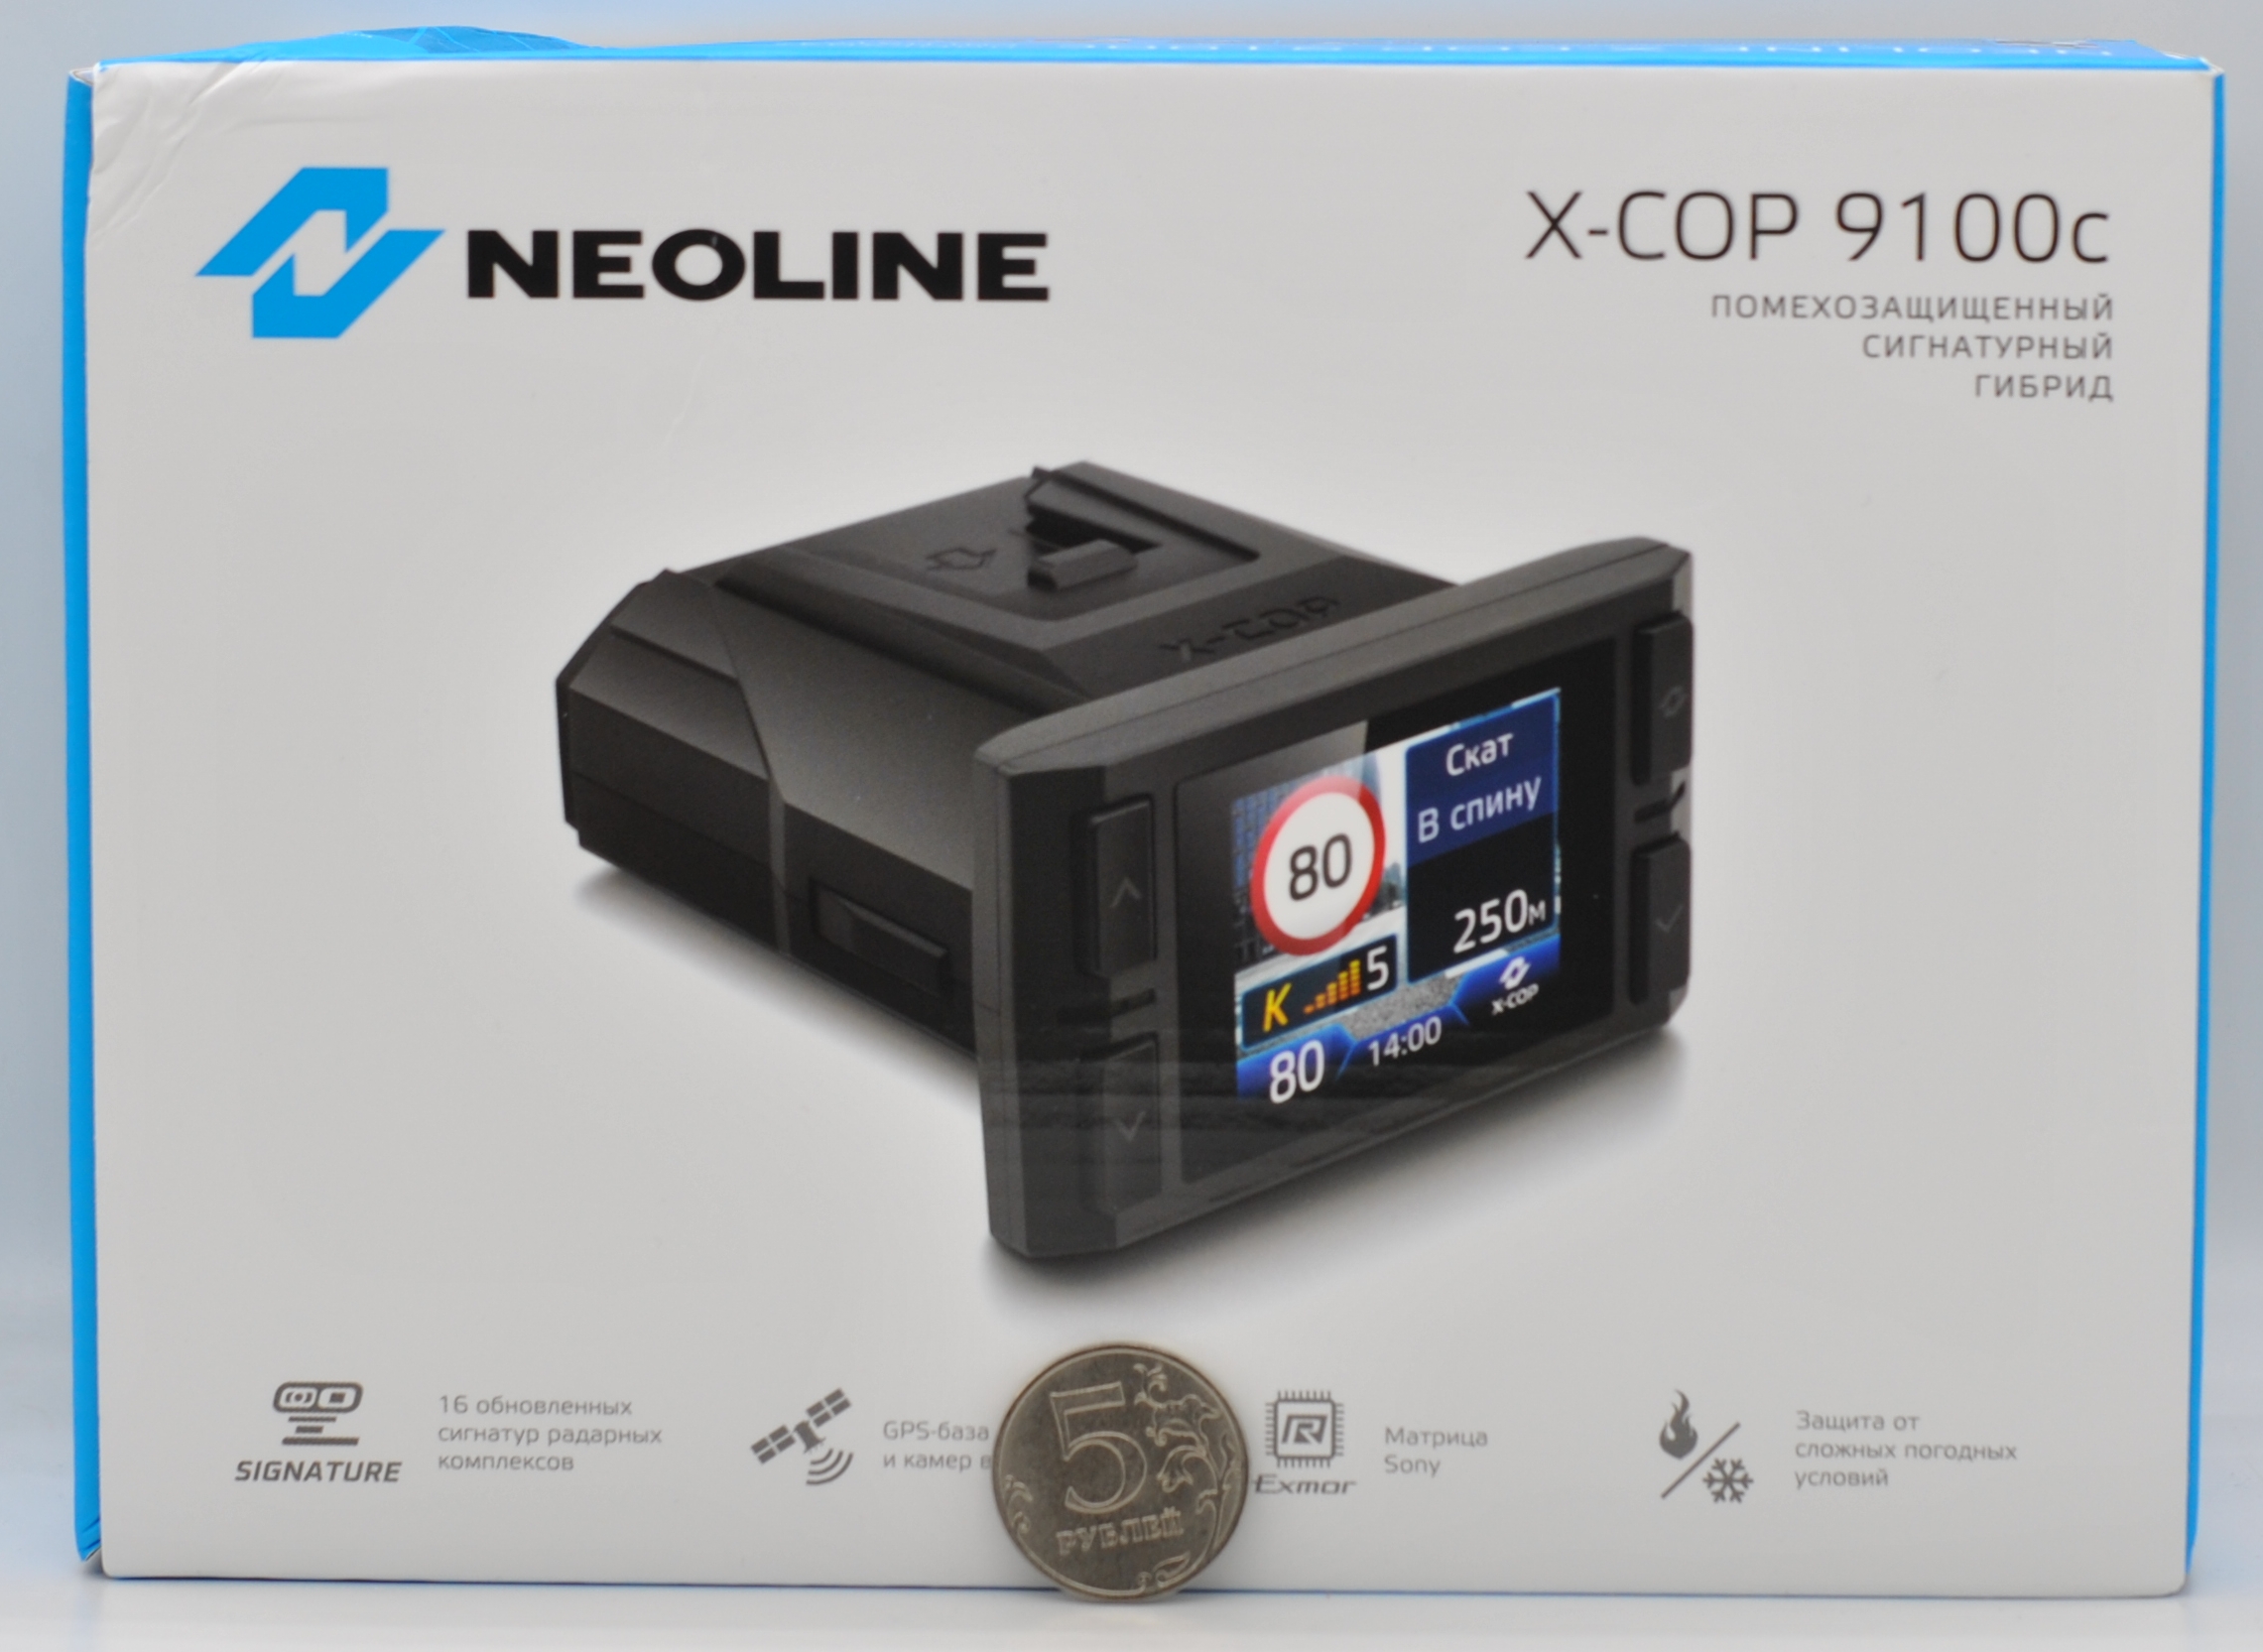 Neoline x cop 9100c. Neoline x-cop 9100x. X-cop 6000c. Где на коробке находится серийный номер устройства гибрила Neoline xcop 9100z.